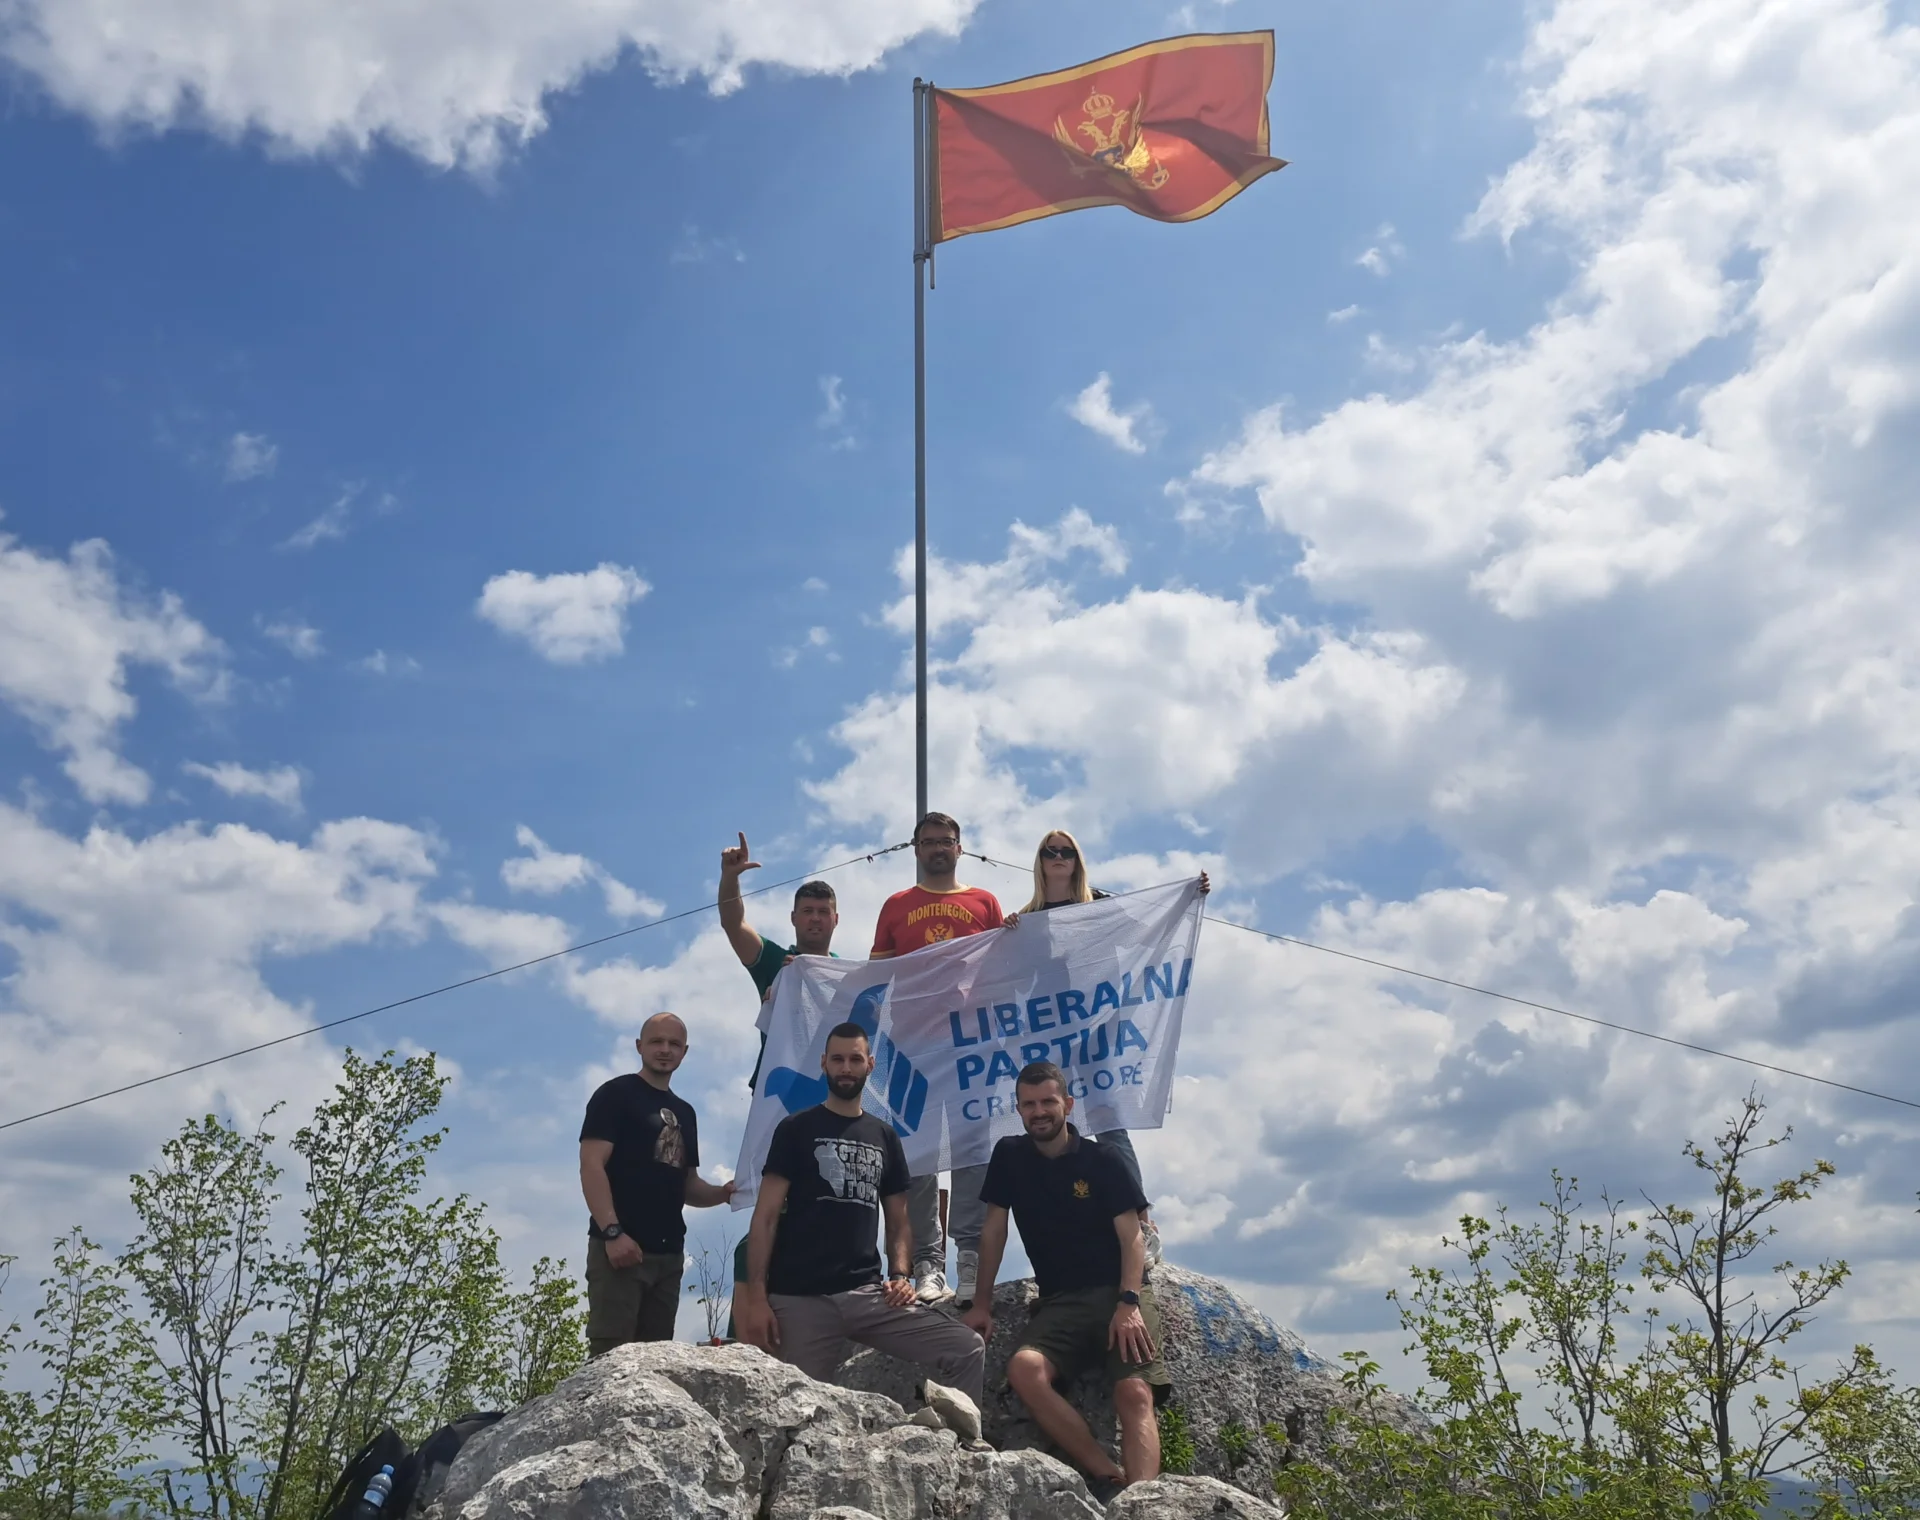 Mladi LP i kandidati za poslanike obnovili crnogorski barjak na Budošu iznad Nikšića kao simbol slobodarske tradicije grada